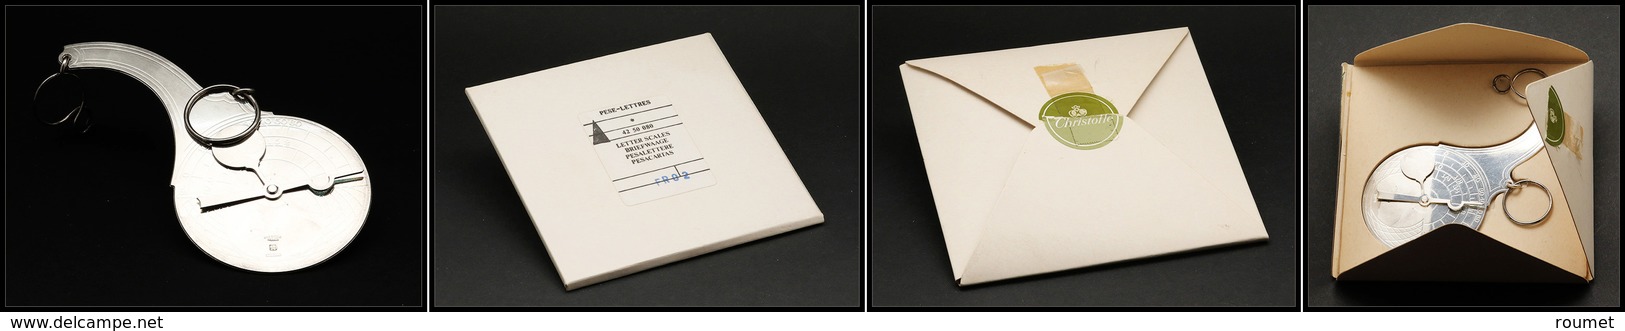 Pèse-lettres. Archambaud N°77, Modèle Pendulaire En Métal Argenté De La Maison Christofle, Dans Sa Boîte D'origine, éche - Stamp Boxes